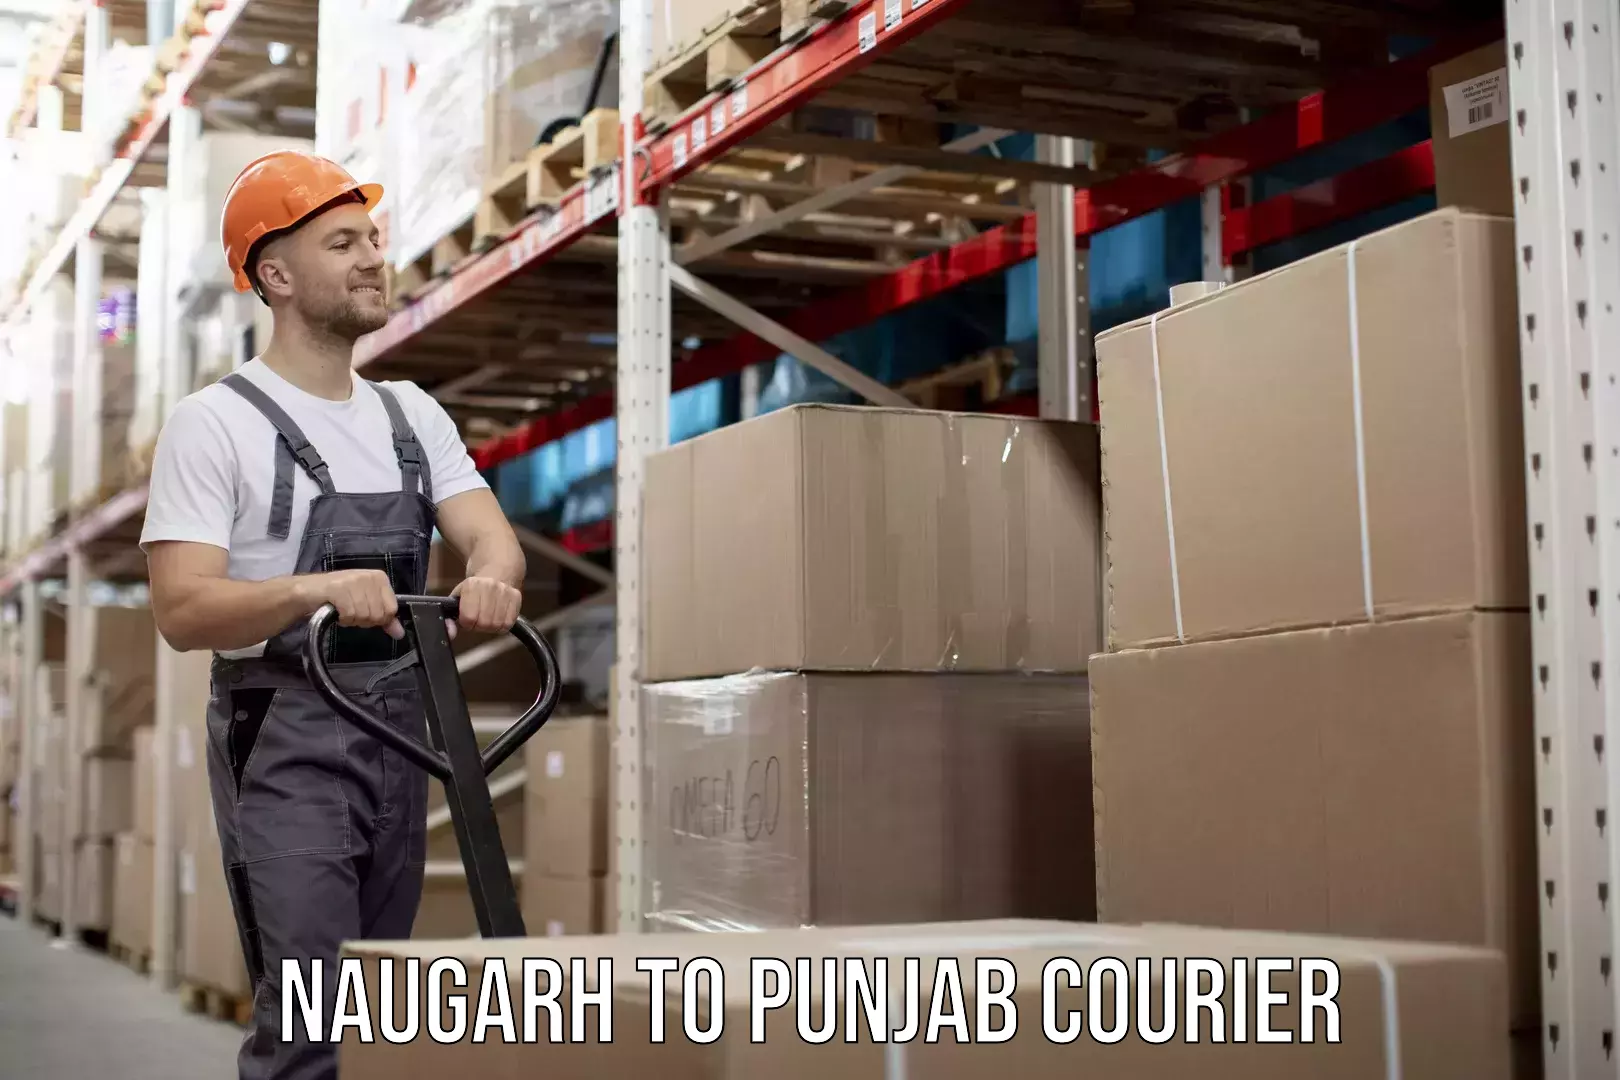 Personalized furniture moving Naugarh to Punjab